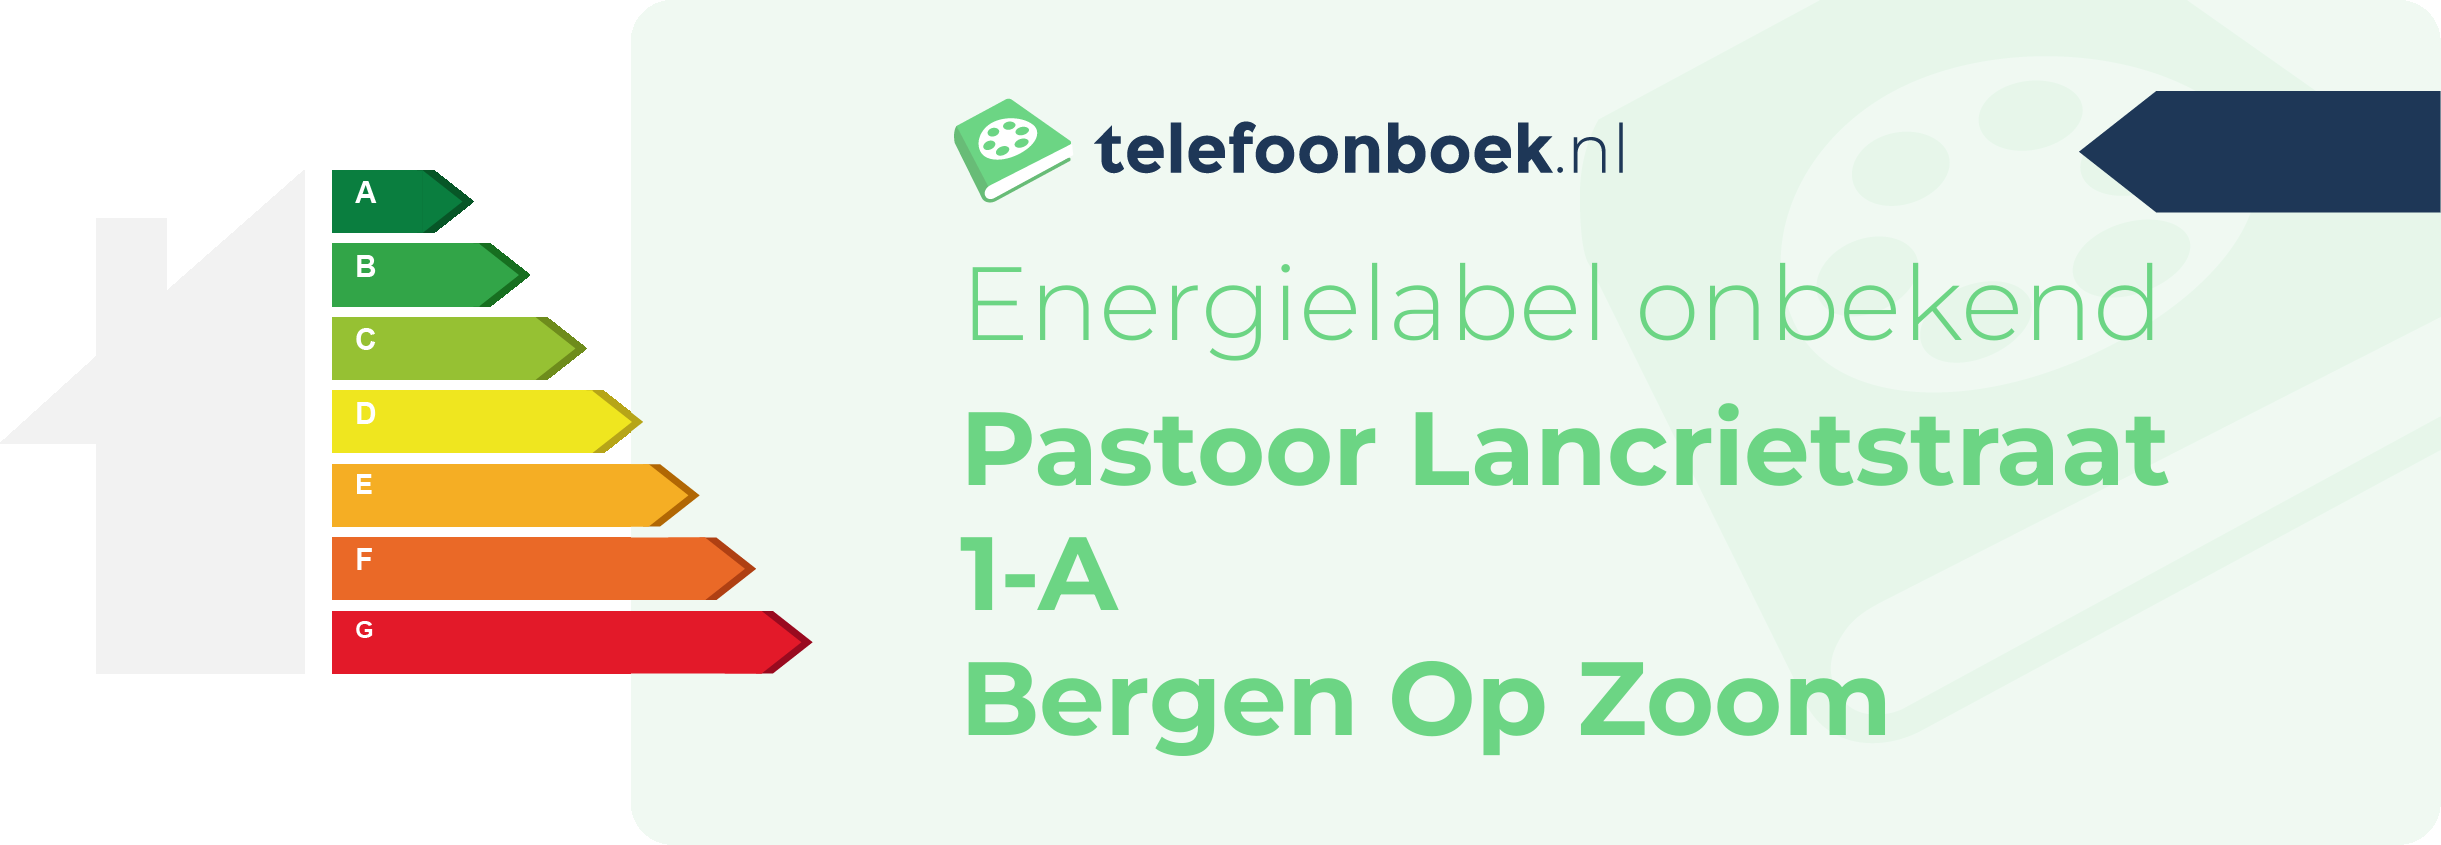 Energielabel Pastoor Lancrietstraat 1-A Bergen Op Zoom